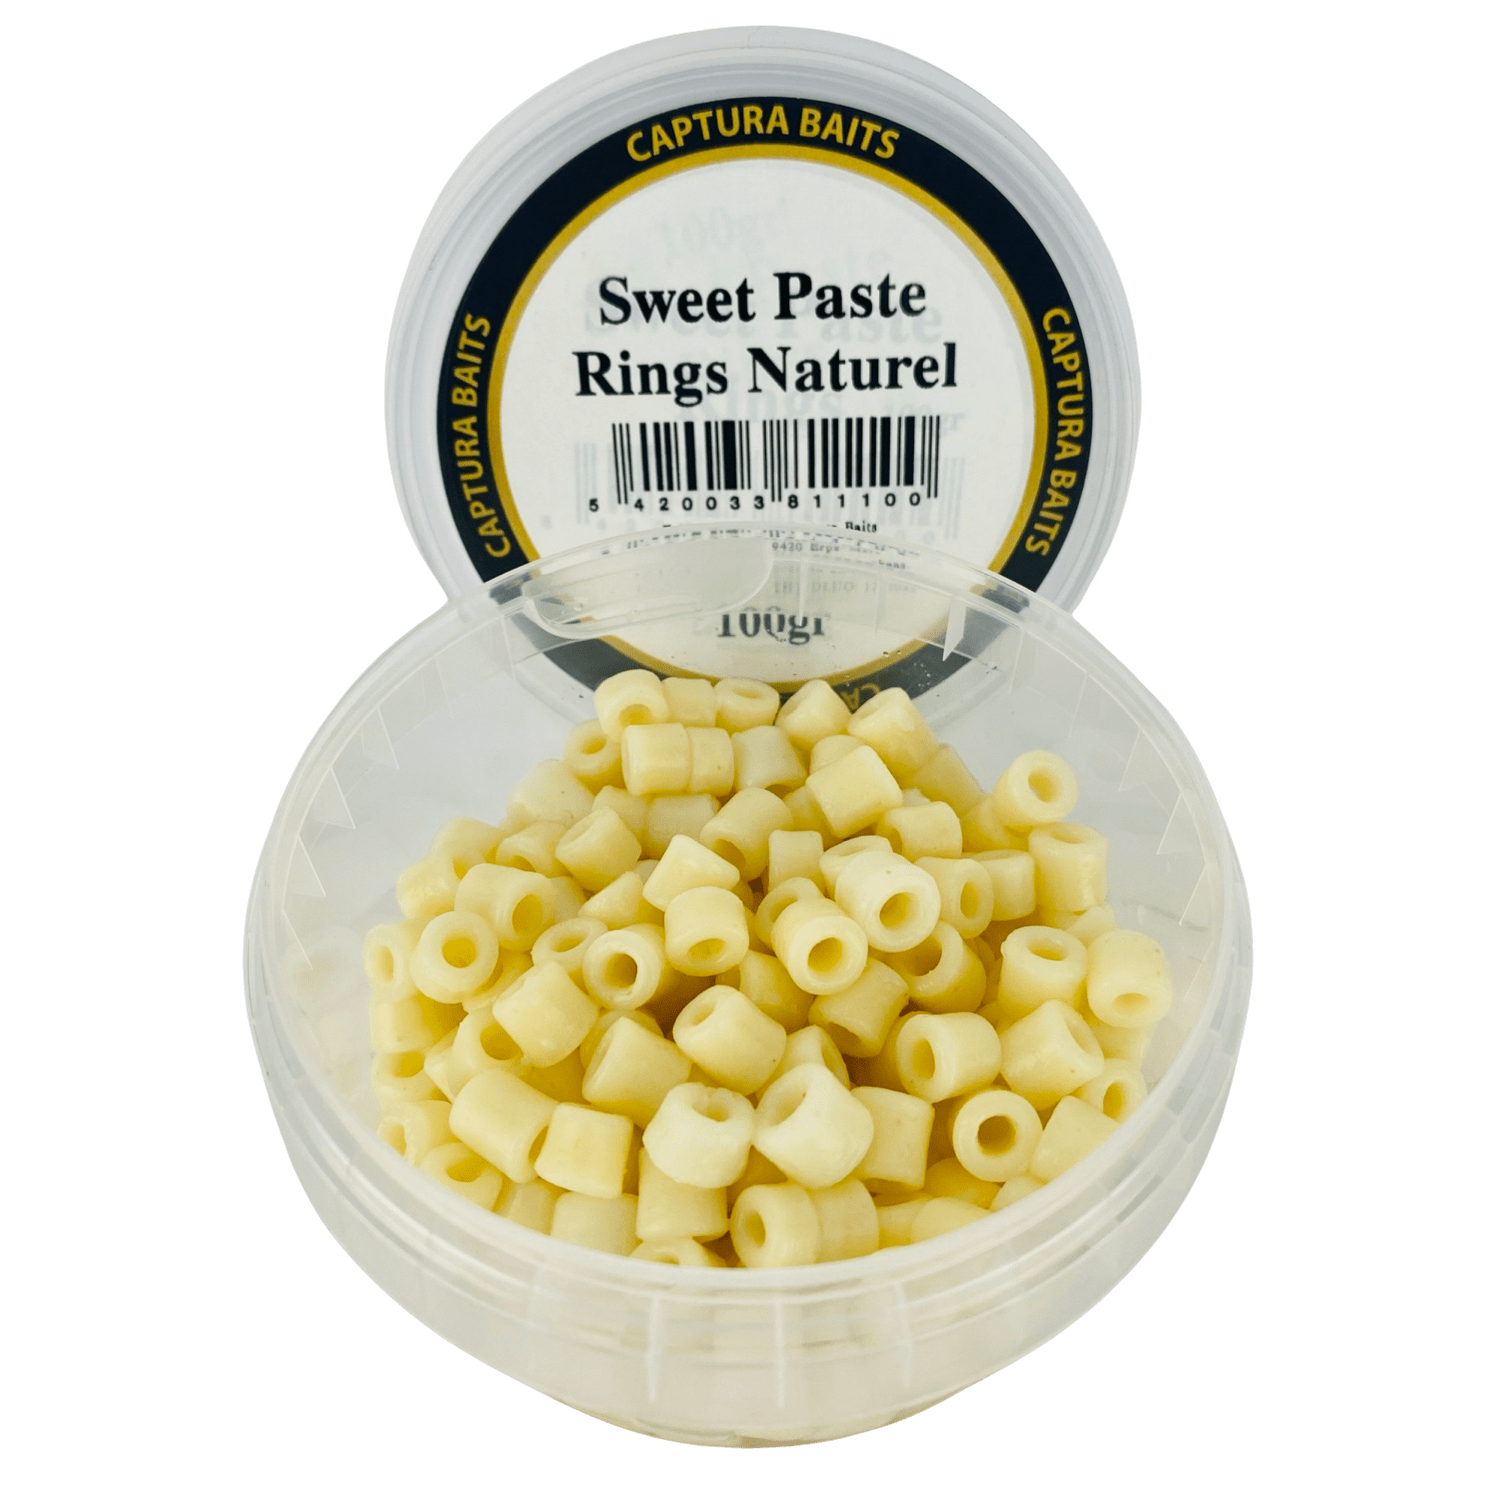 captura baits sweet paste rings pasta macaroni naturel